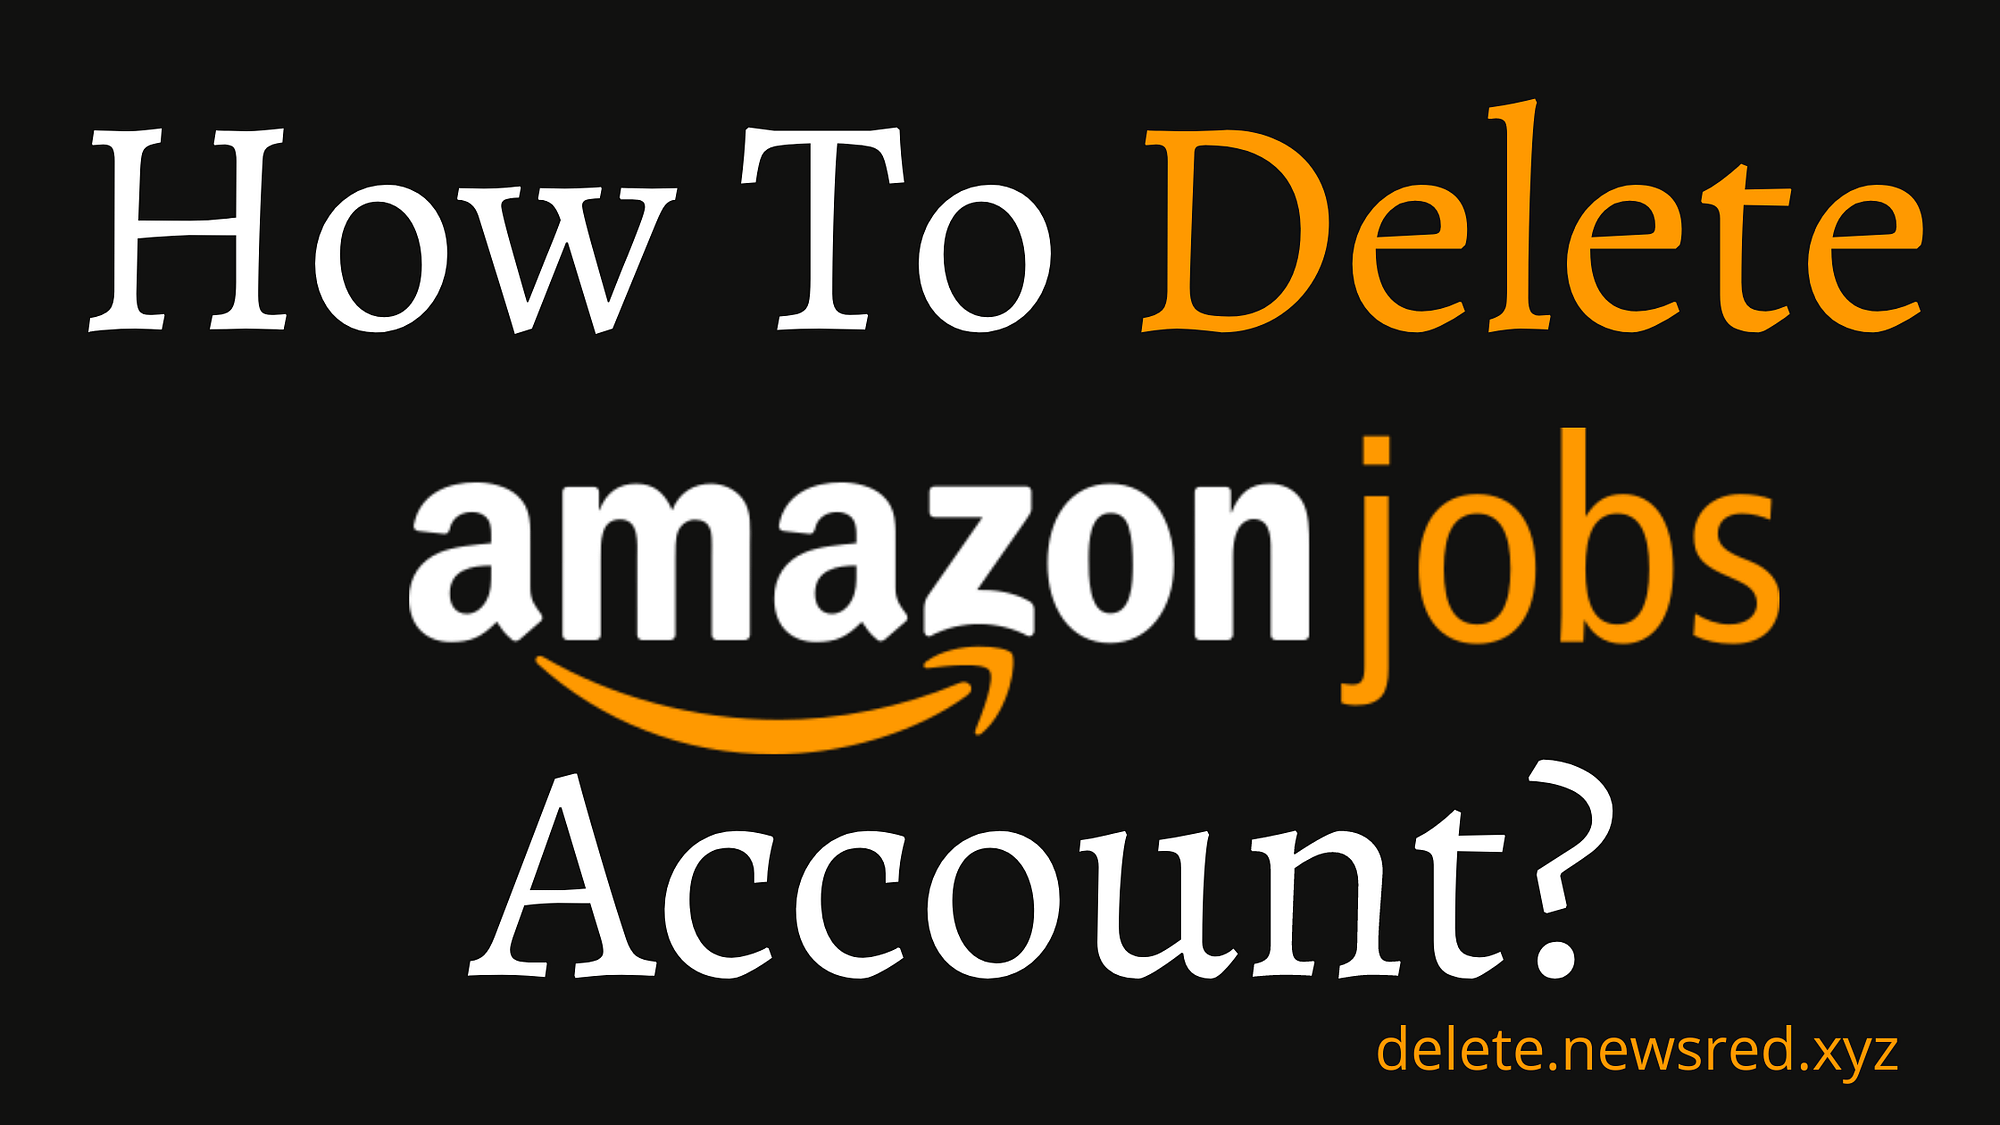 How To Delete Amazon Jobs Account?